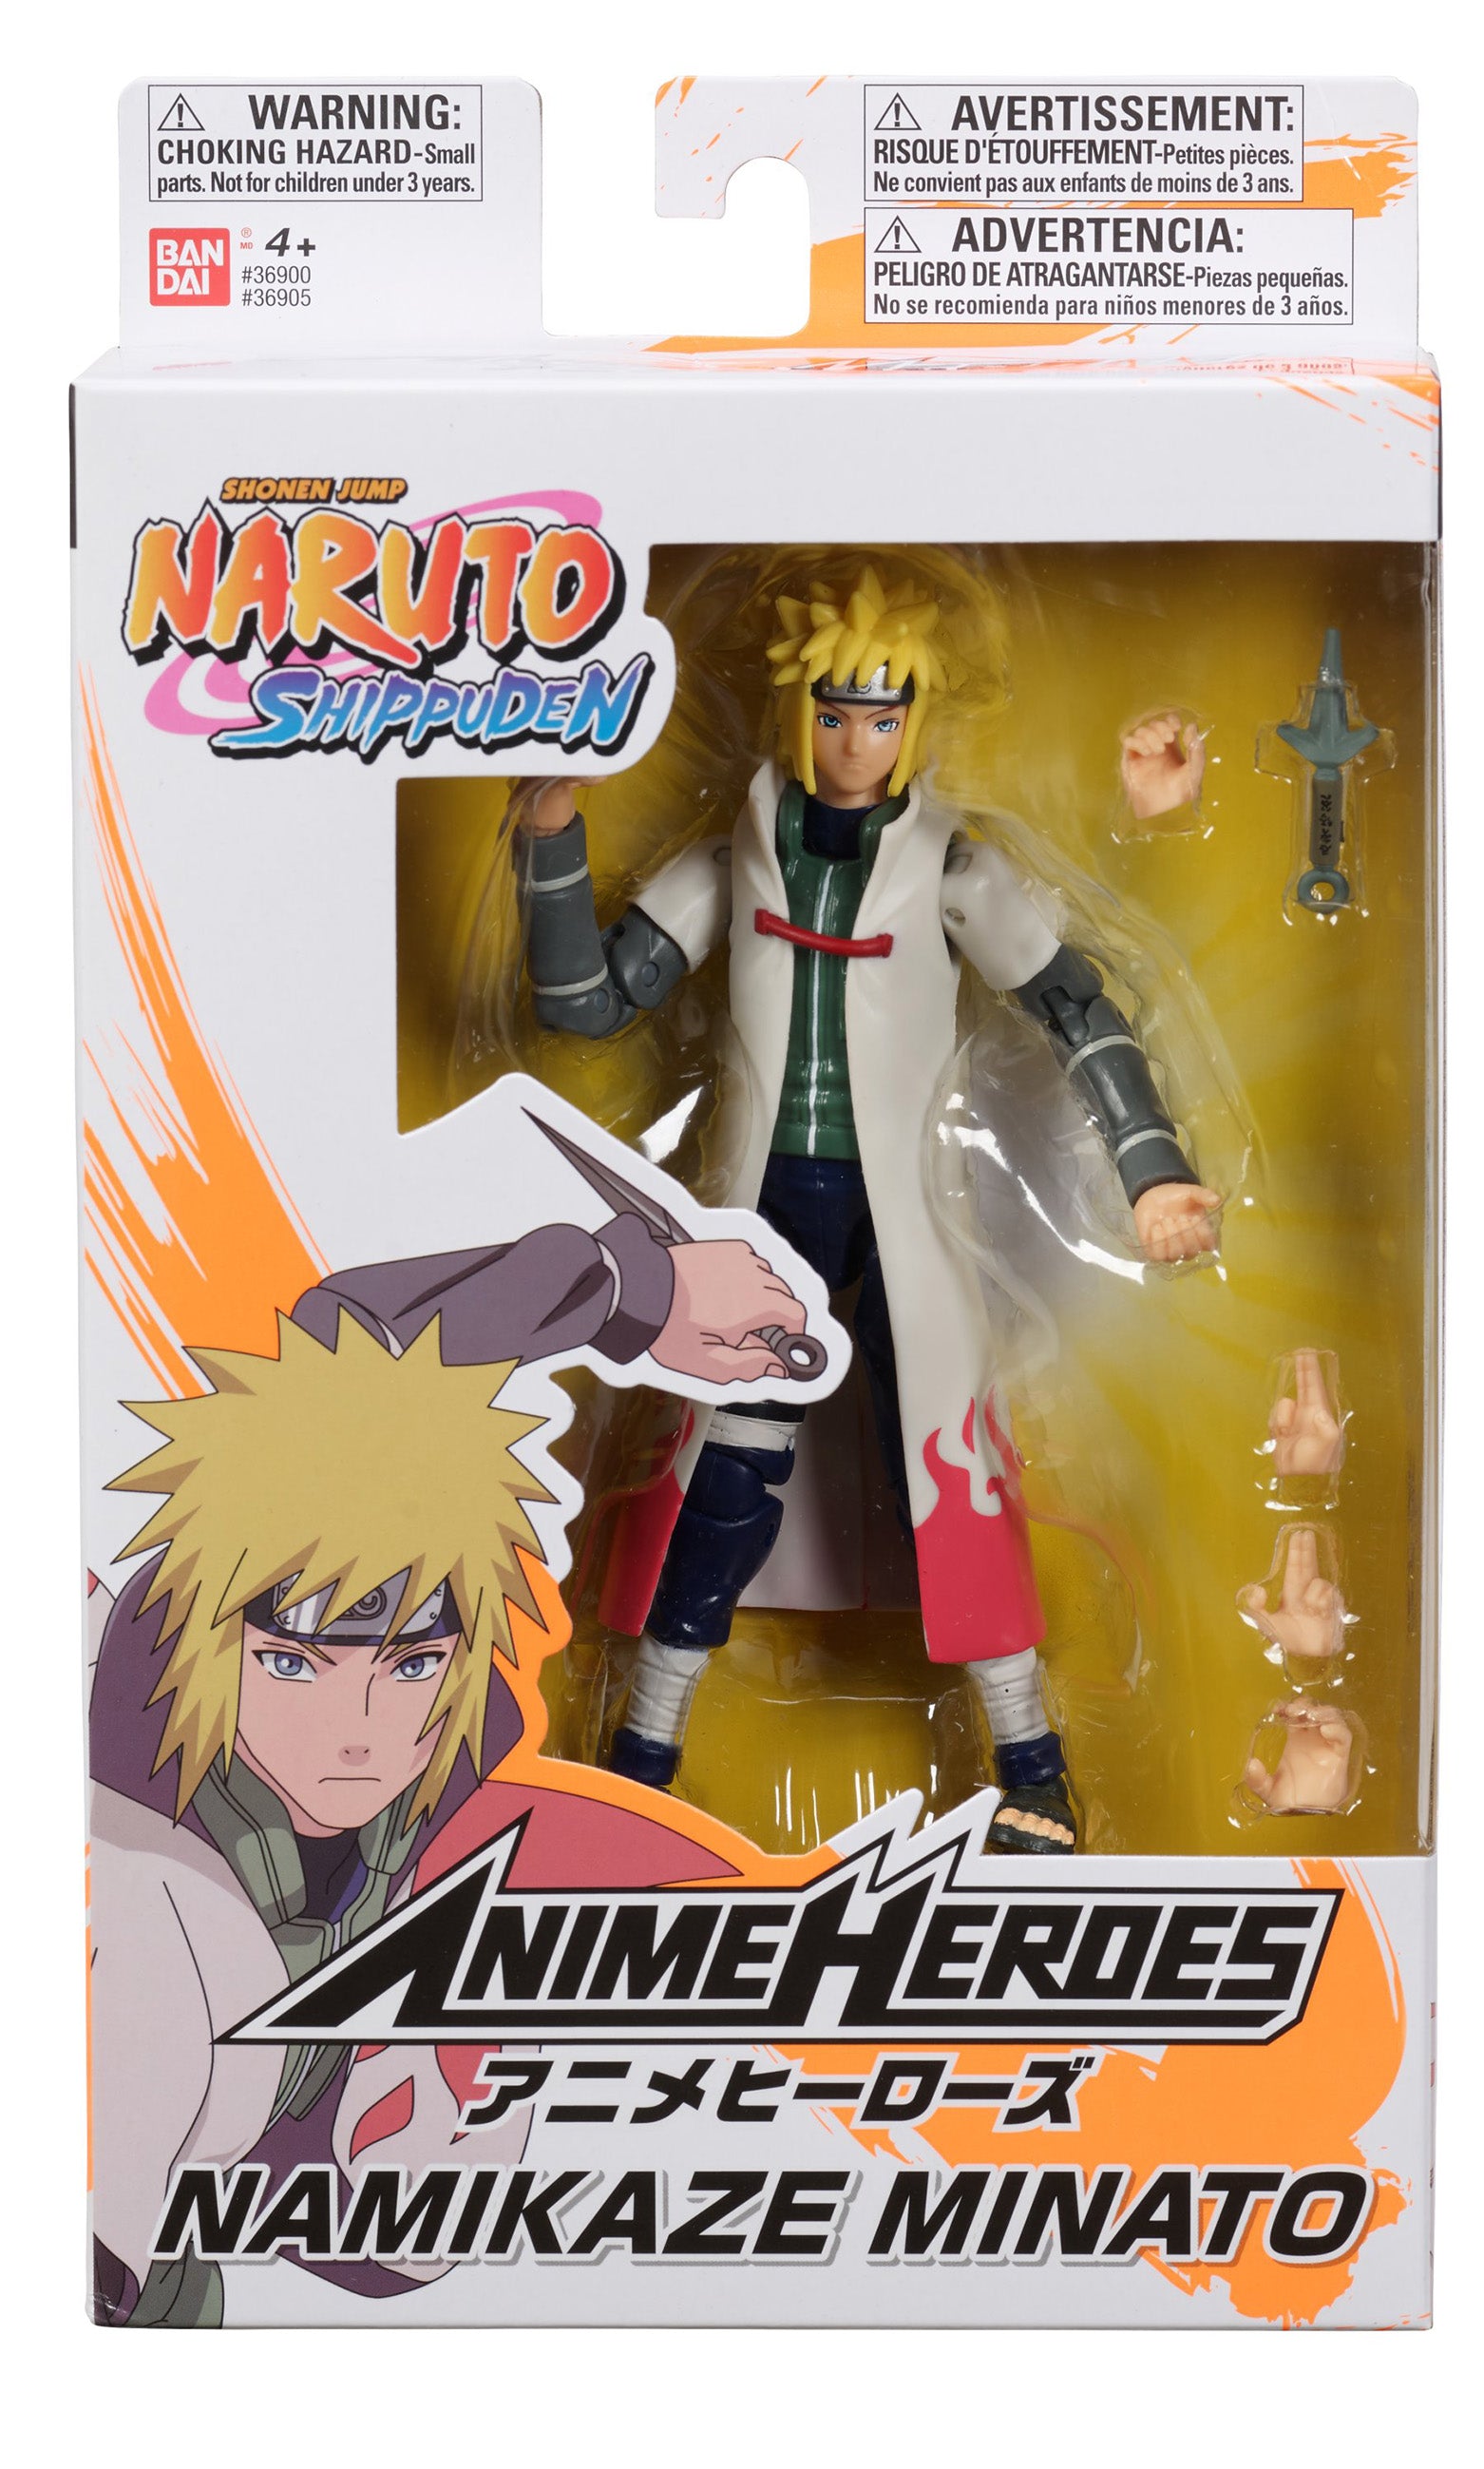 Ah Naruto Minato